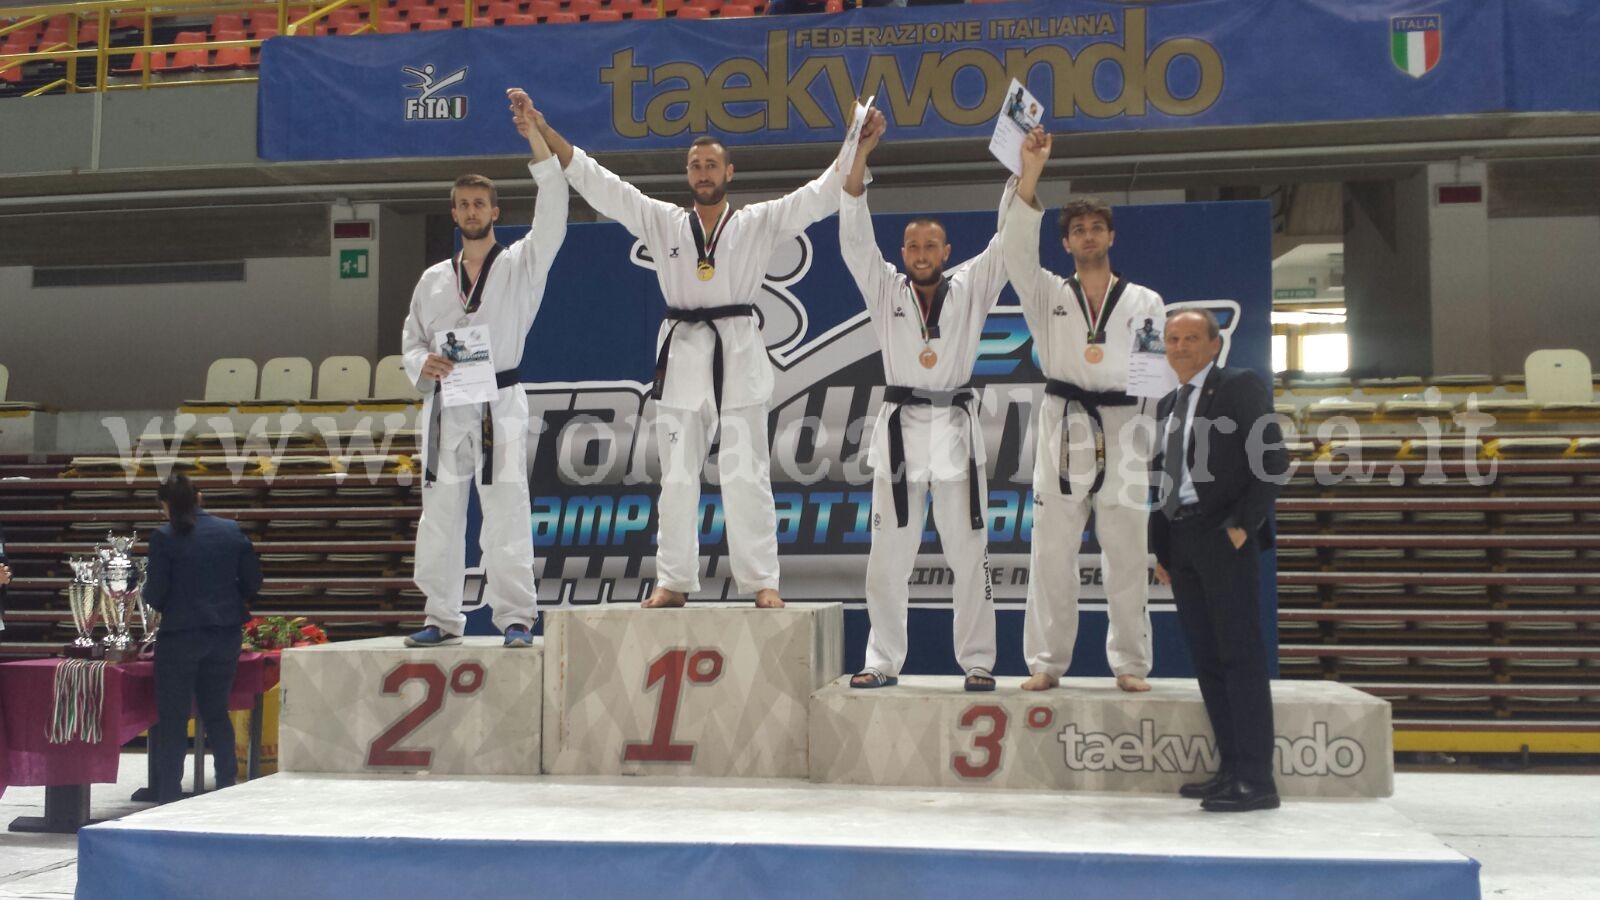 Il puteolano Antonio D’Angelo è campione italiano di taekwondo